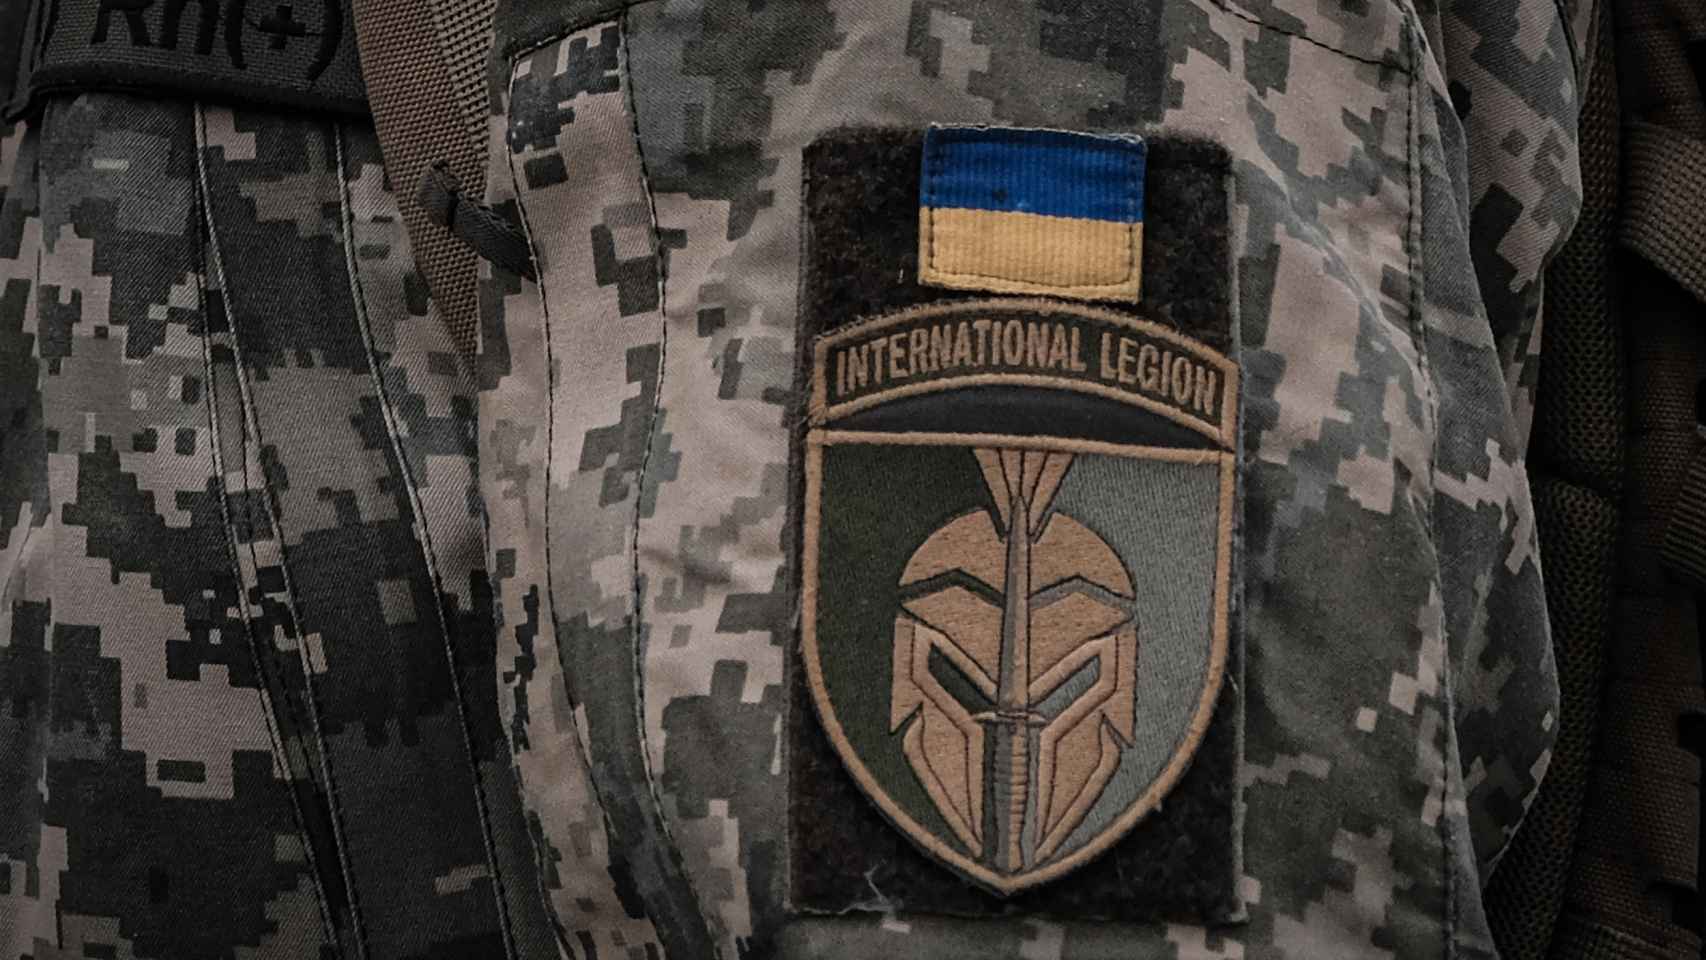 Detalle de la insignia de la Legión Internacional de Ucrania